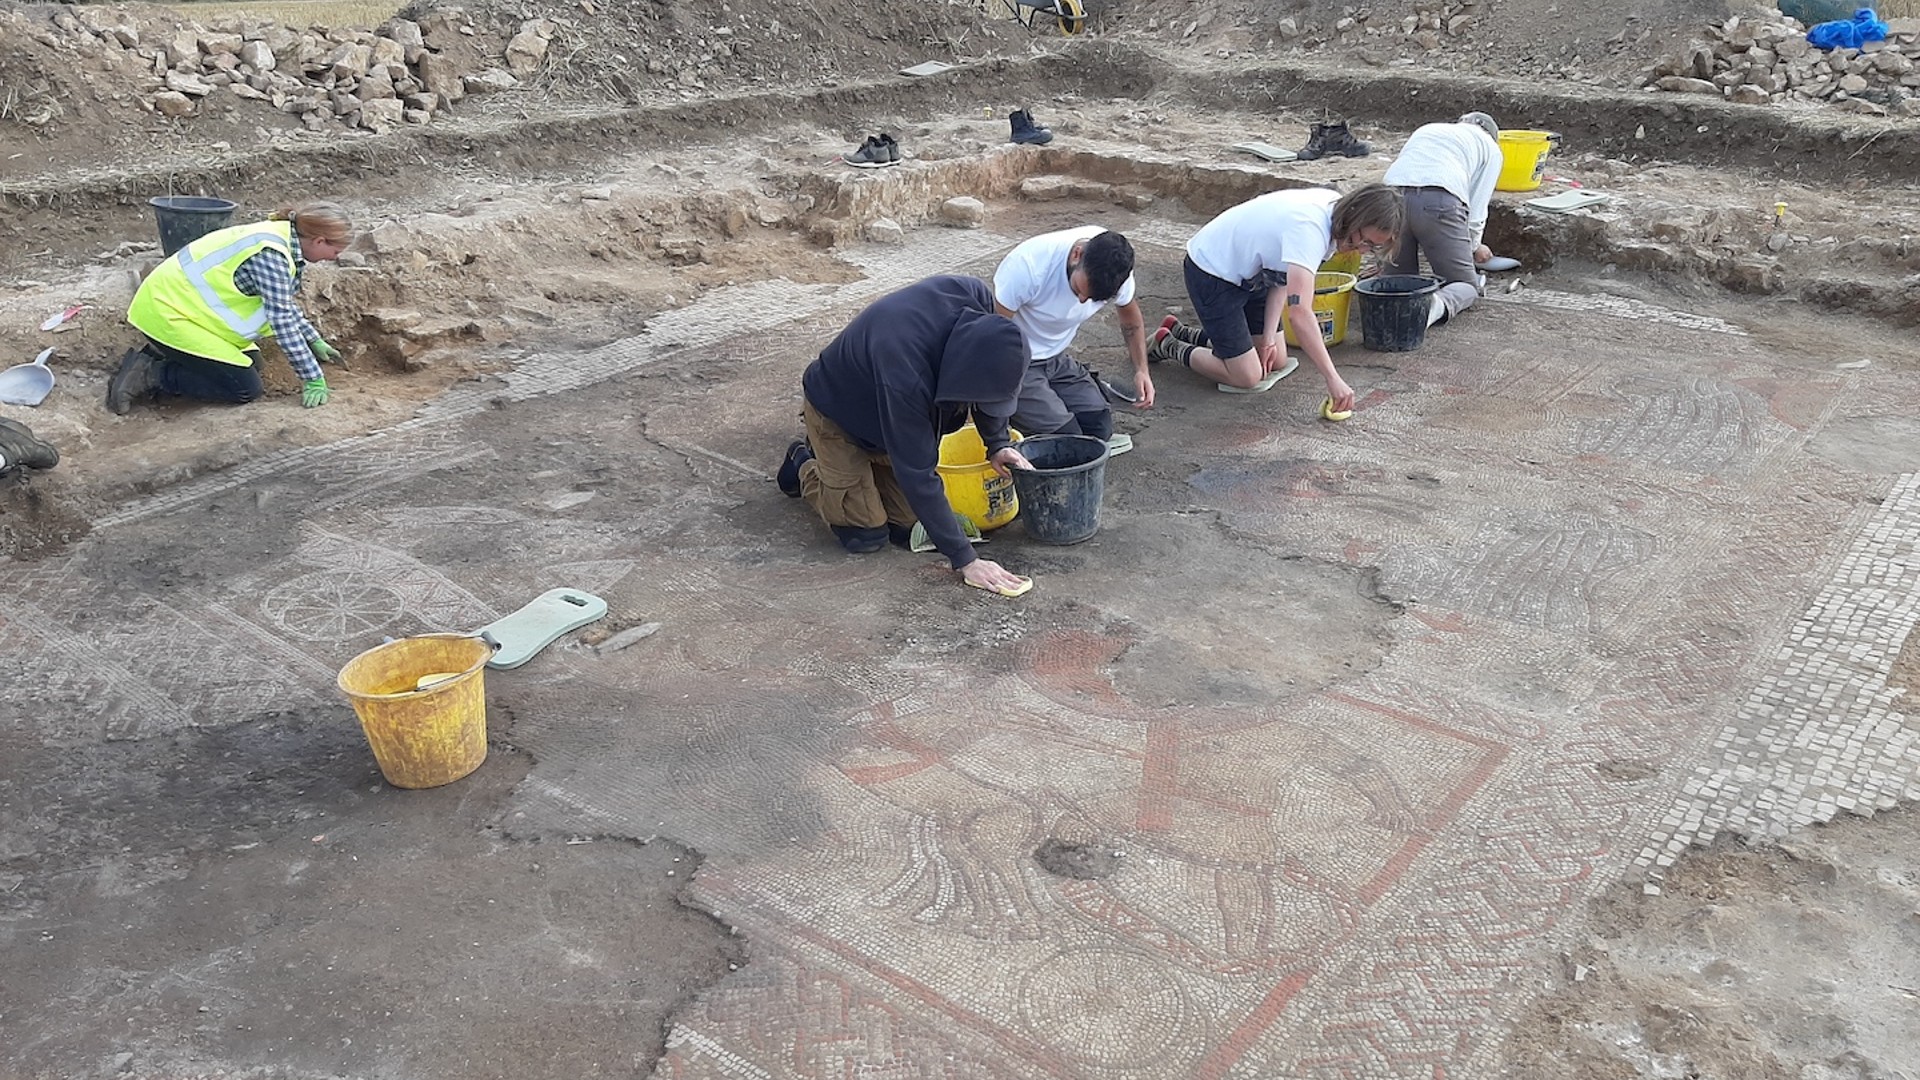 Archäologiestudenten und Mitarbeiter des Archäologischen Dienstes der University of Leicester der University of Leicester reinigen sorgfältig das vollständig freigelegte Mosaik aus dem Trojanischen Krieg.